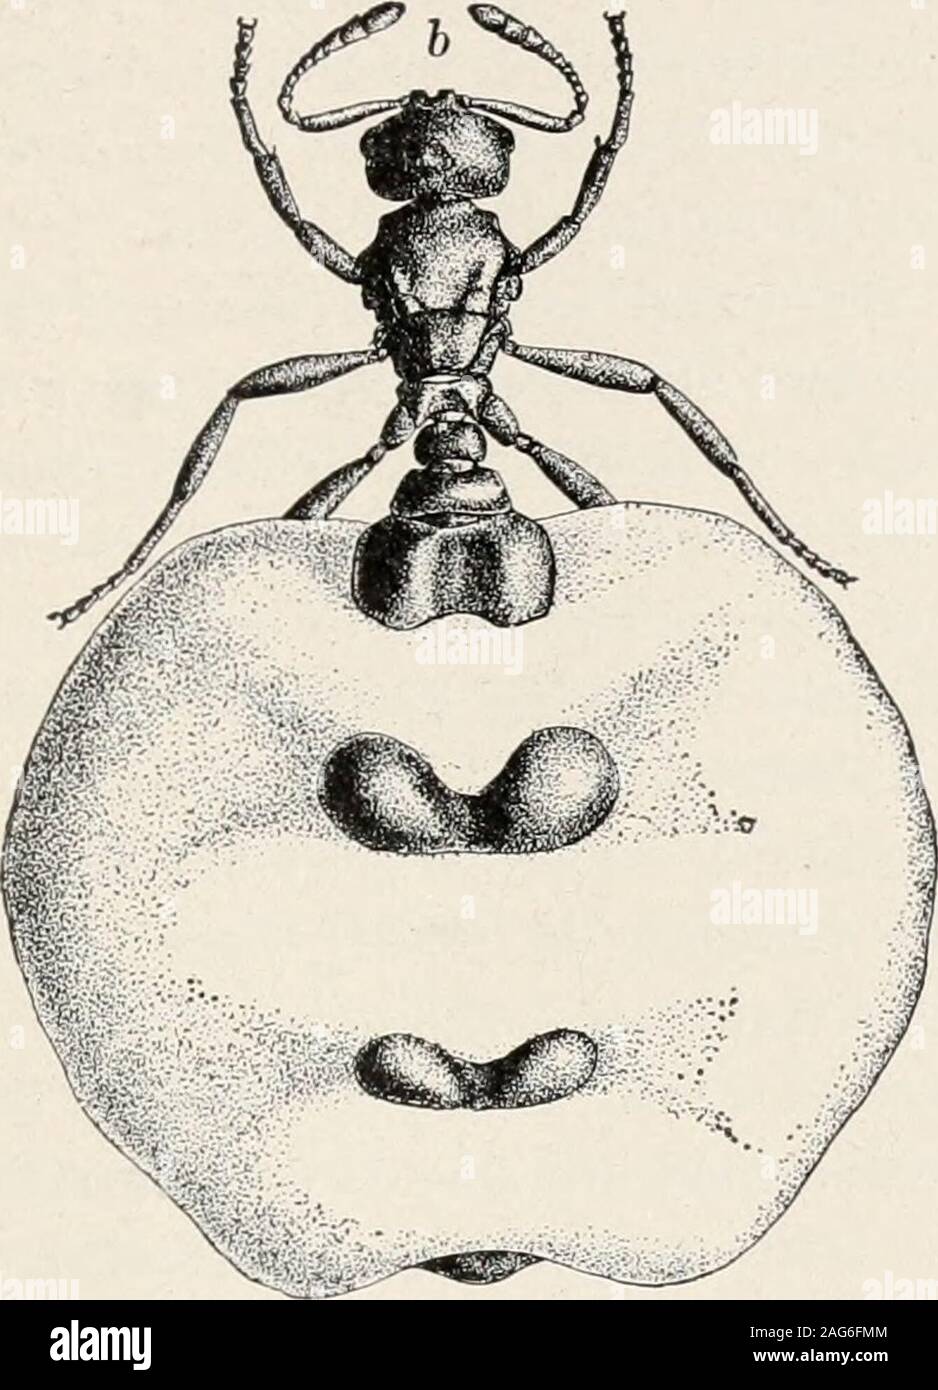 Le formiche; la loro struttura, di sviluppo e di comportamento. Il  degenerare schiavo-maker. 499 e ha la gaster di dimensioni normali, ma con  un dorsalgroove longitudinale prima di fecondazione. Dopo aver